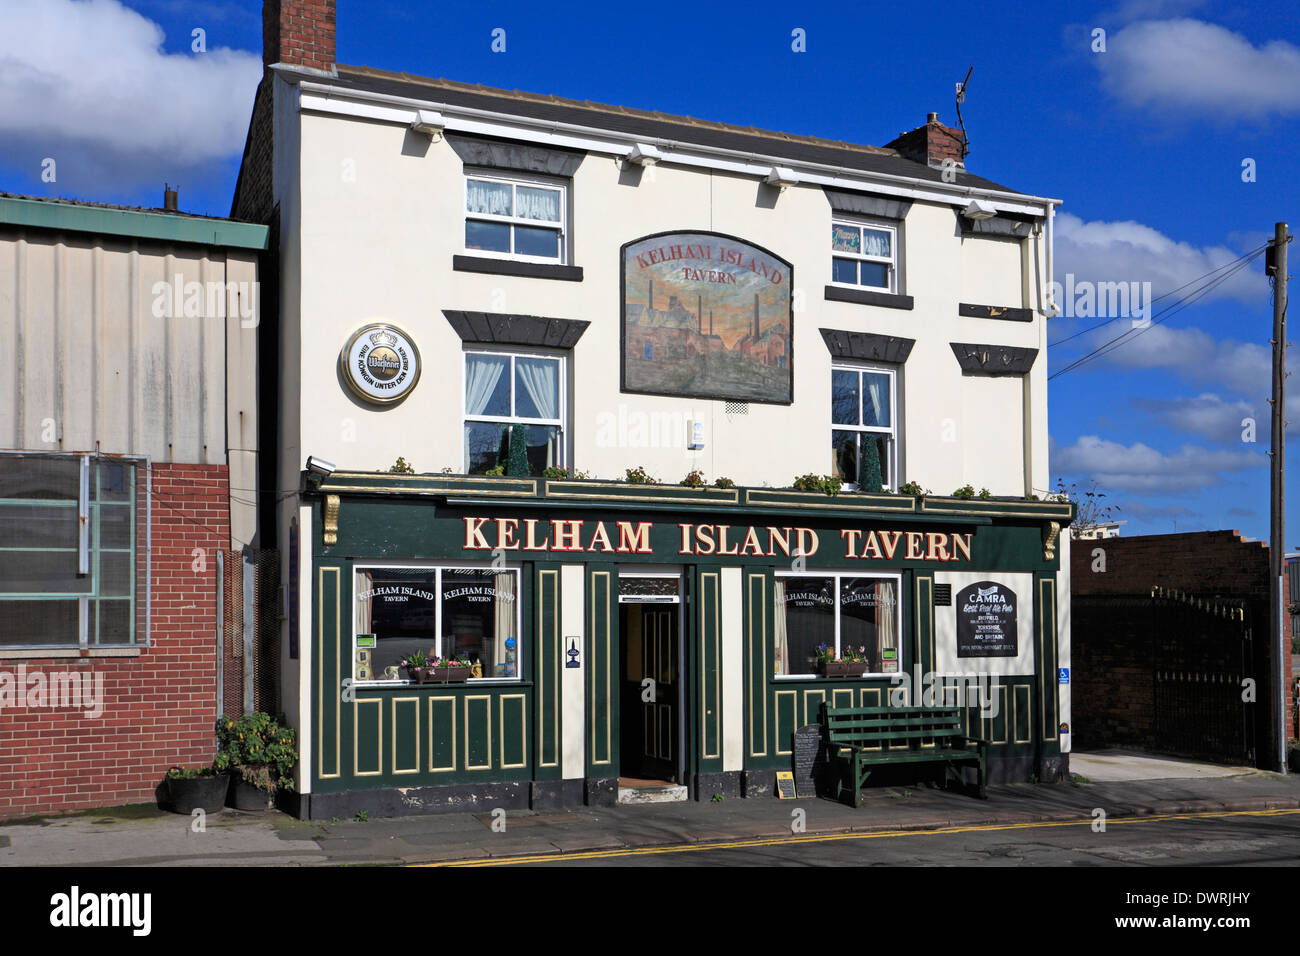 Kelham Island Tavern, Kelham Island, Sheffield, South Yorkshire, England, UK. Stock Photo